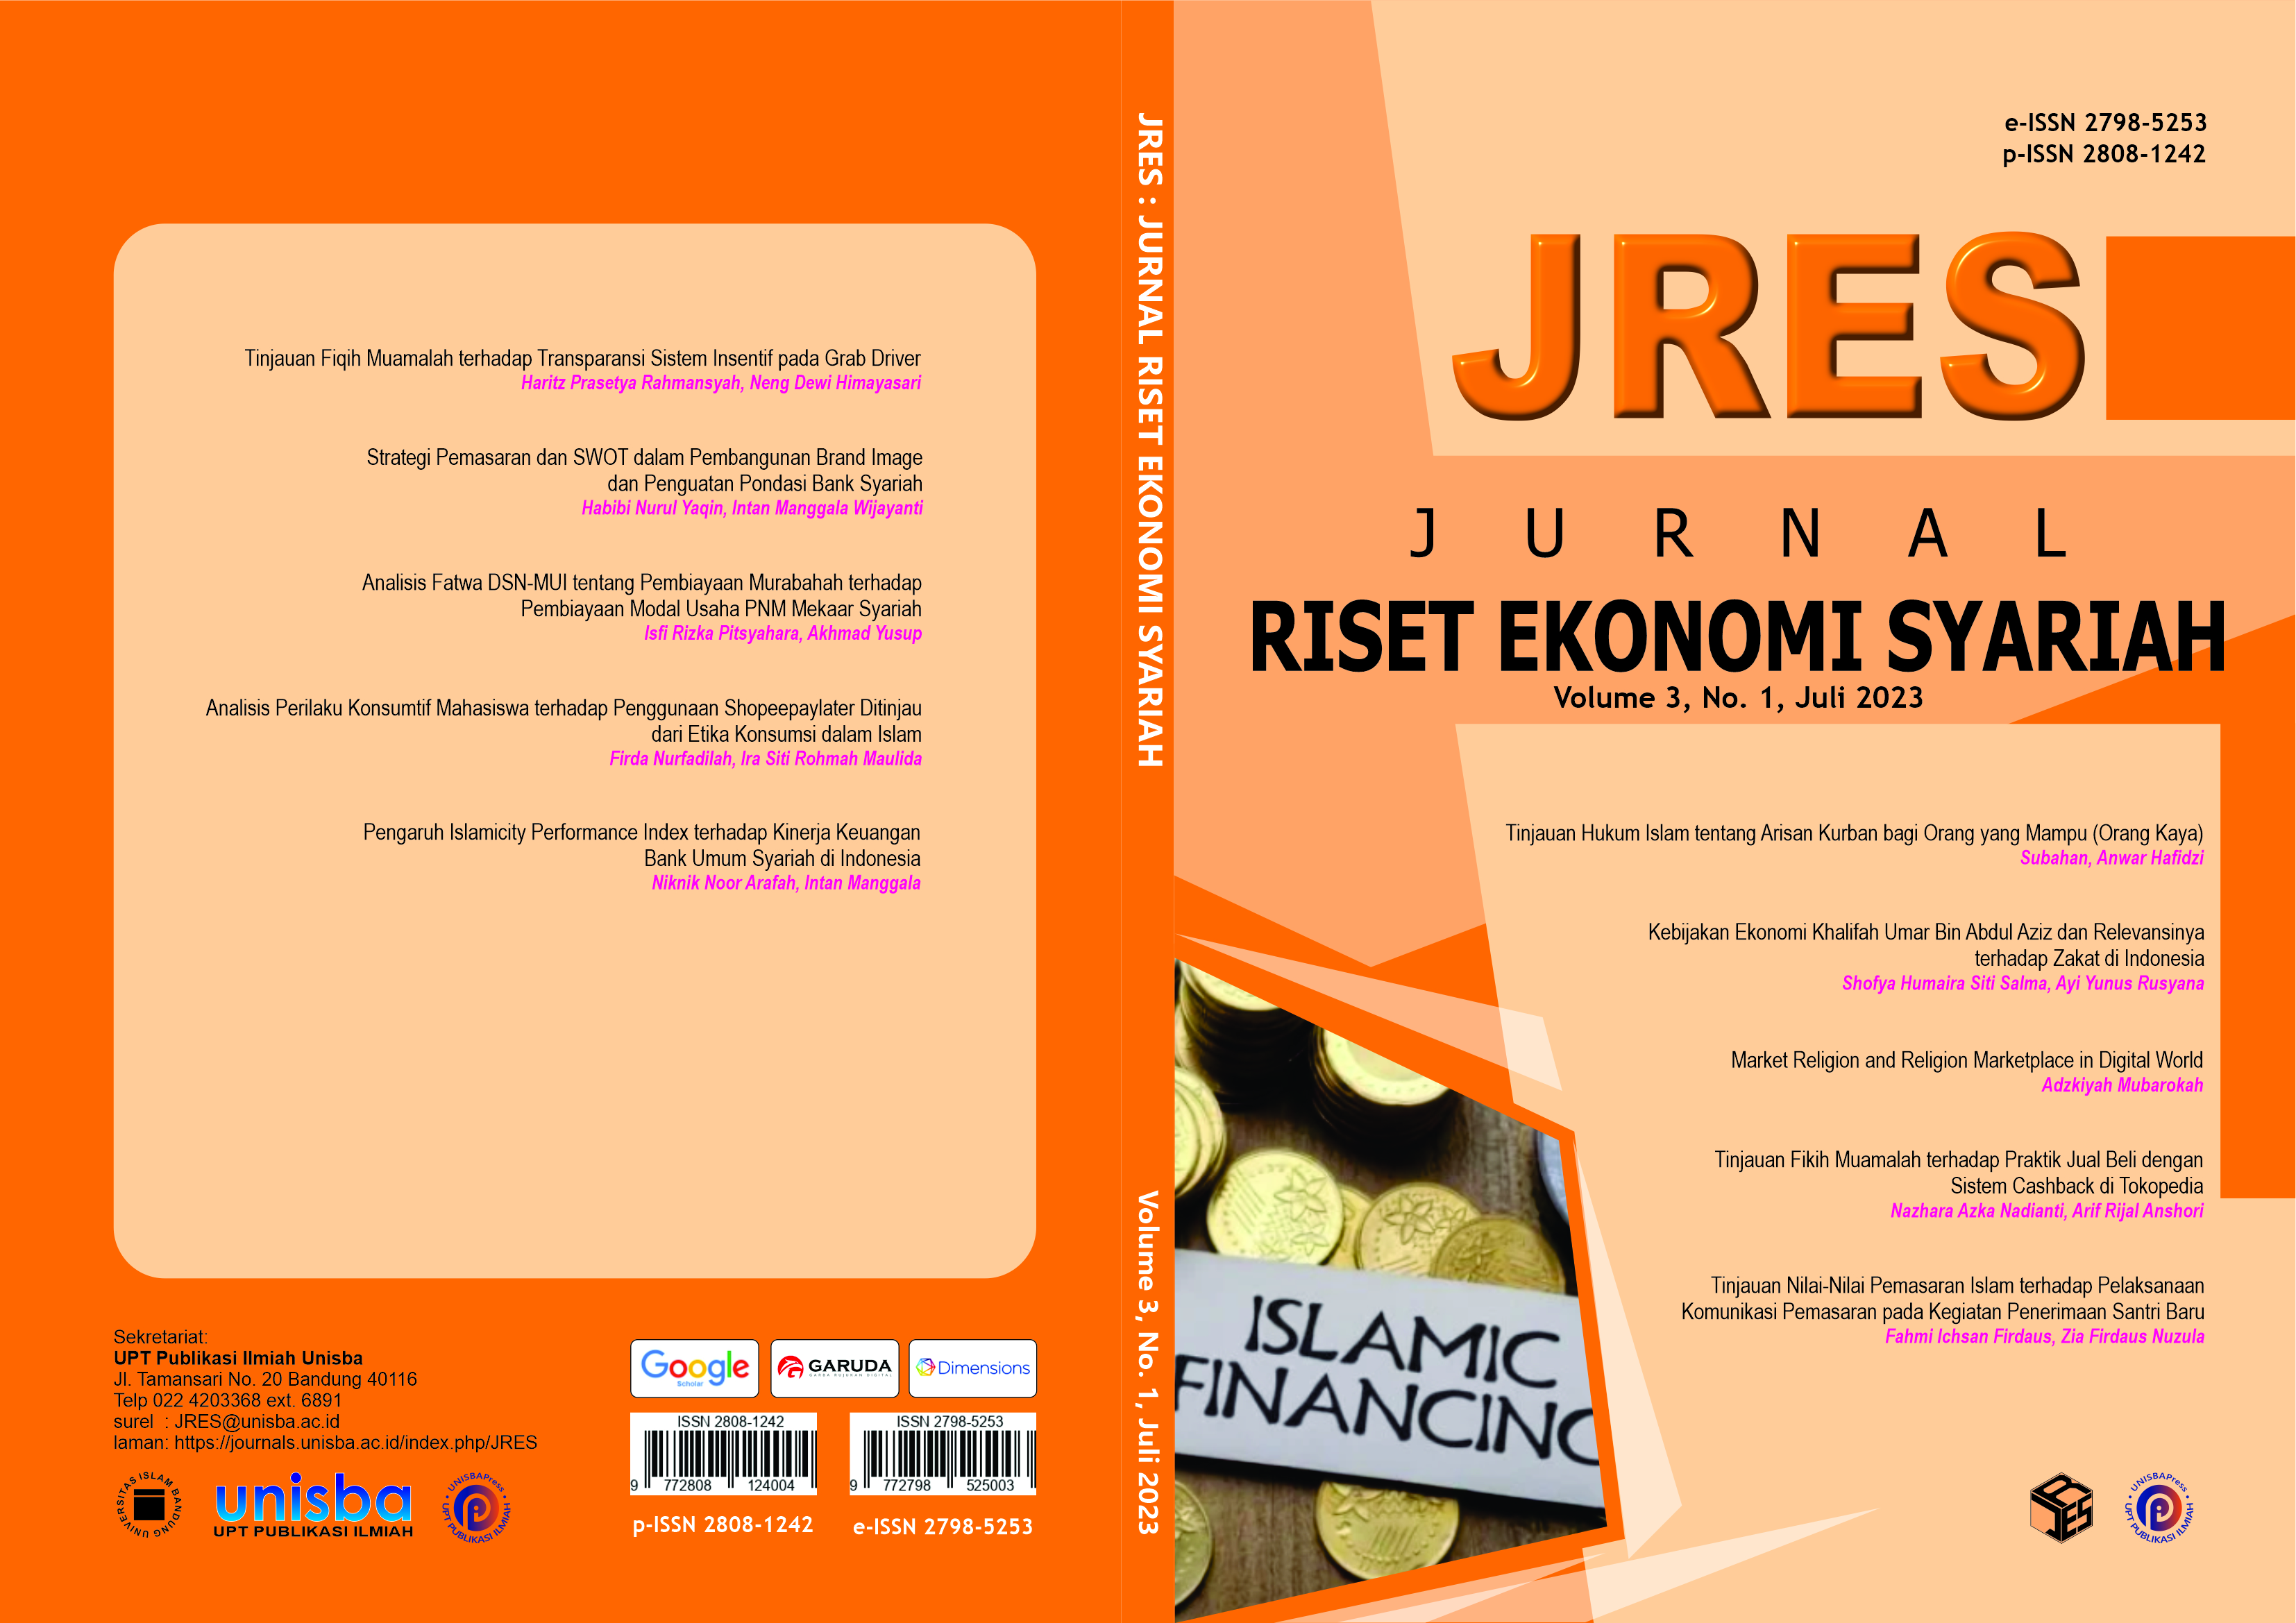 					View Volume 3, No. 1, Juli 2023 Jurnal Riset Ekonomi Syariah (JRES)
				